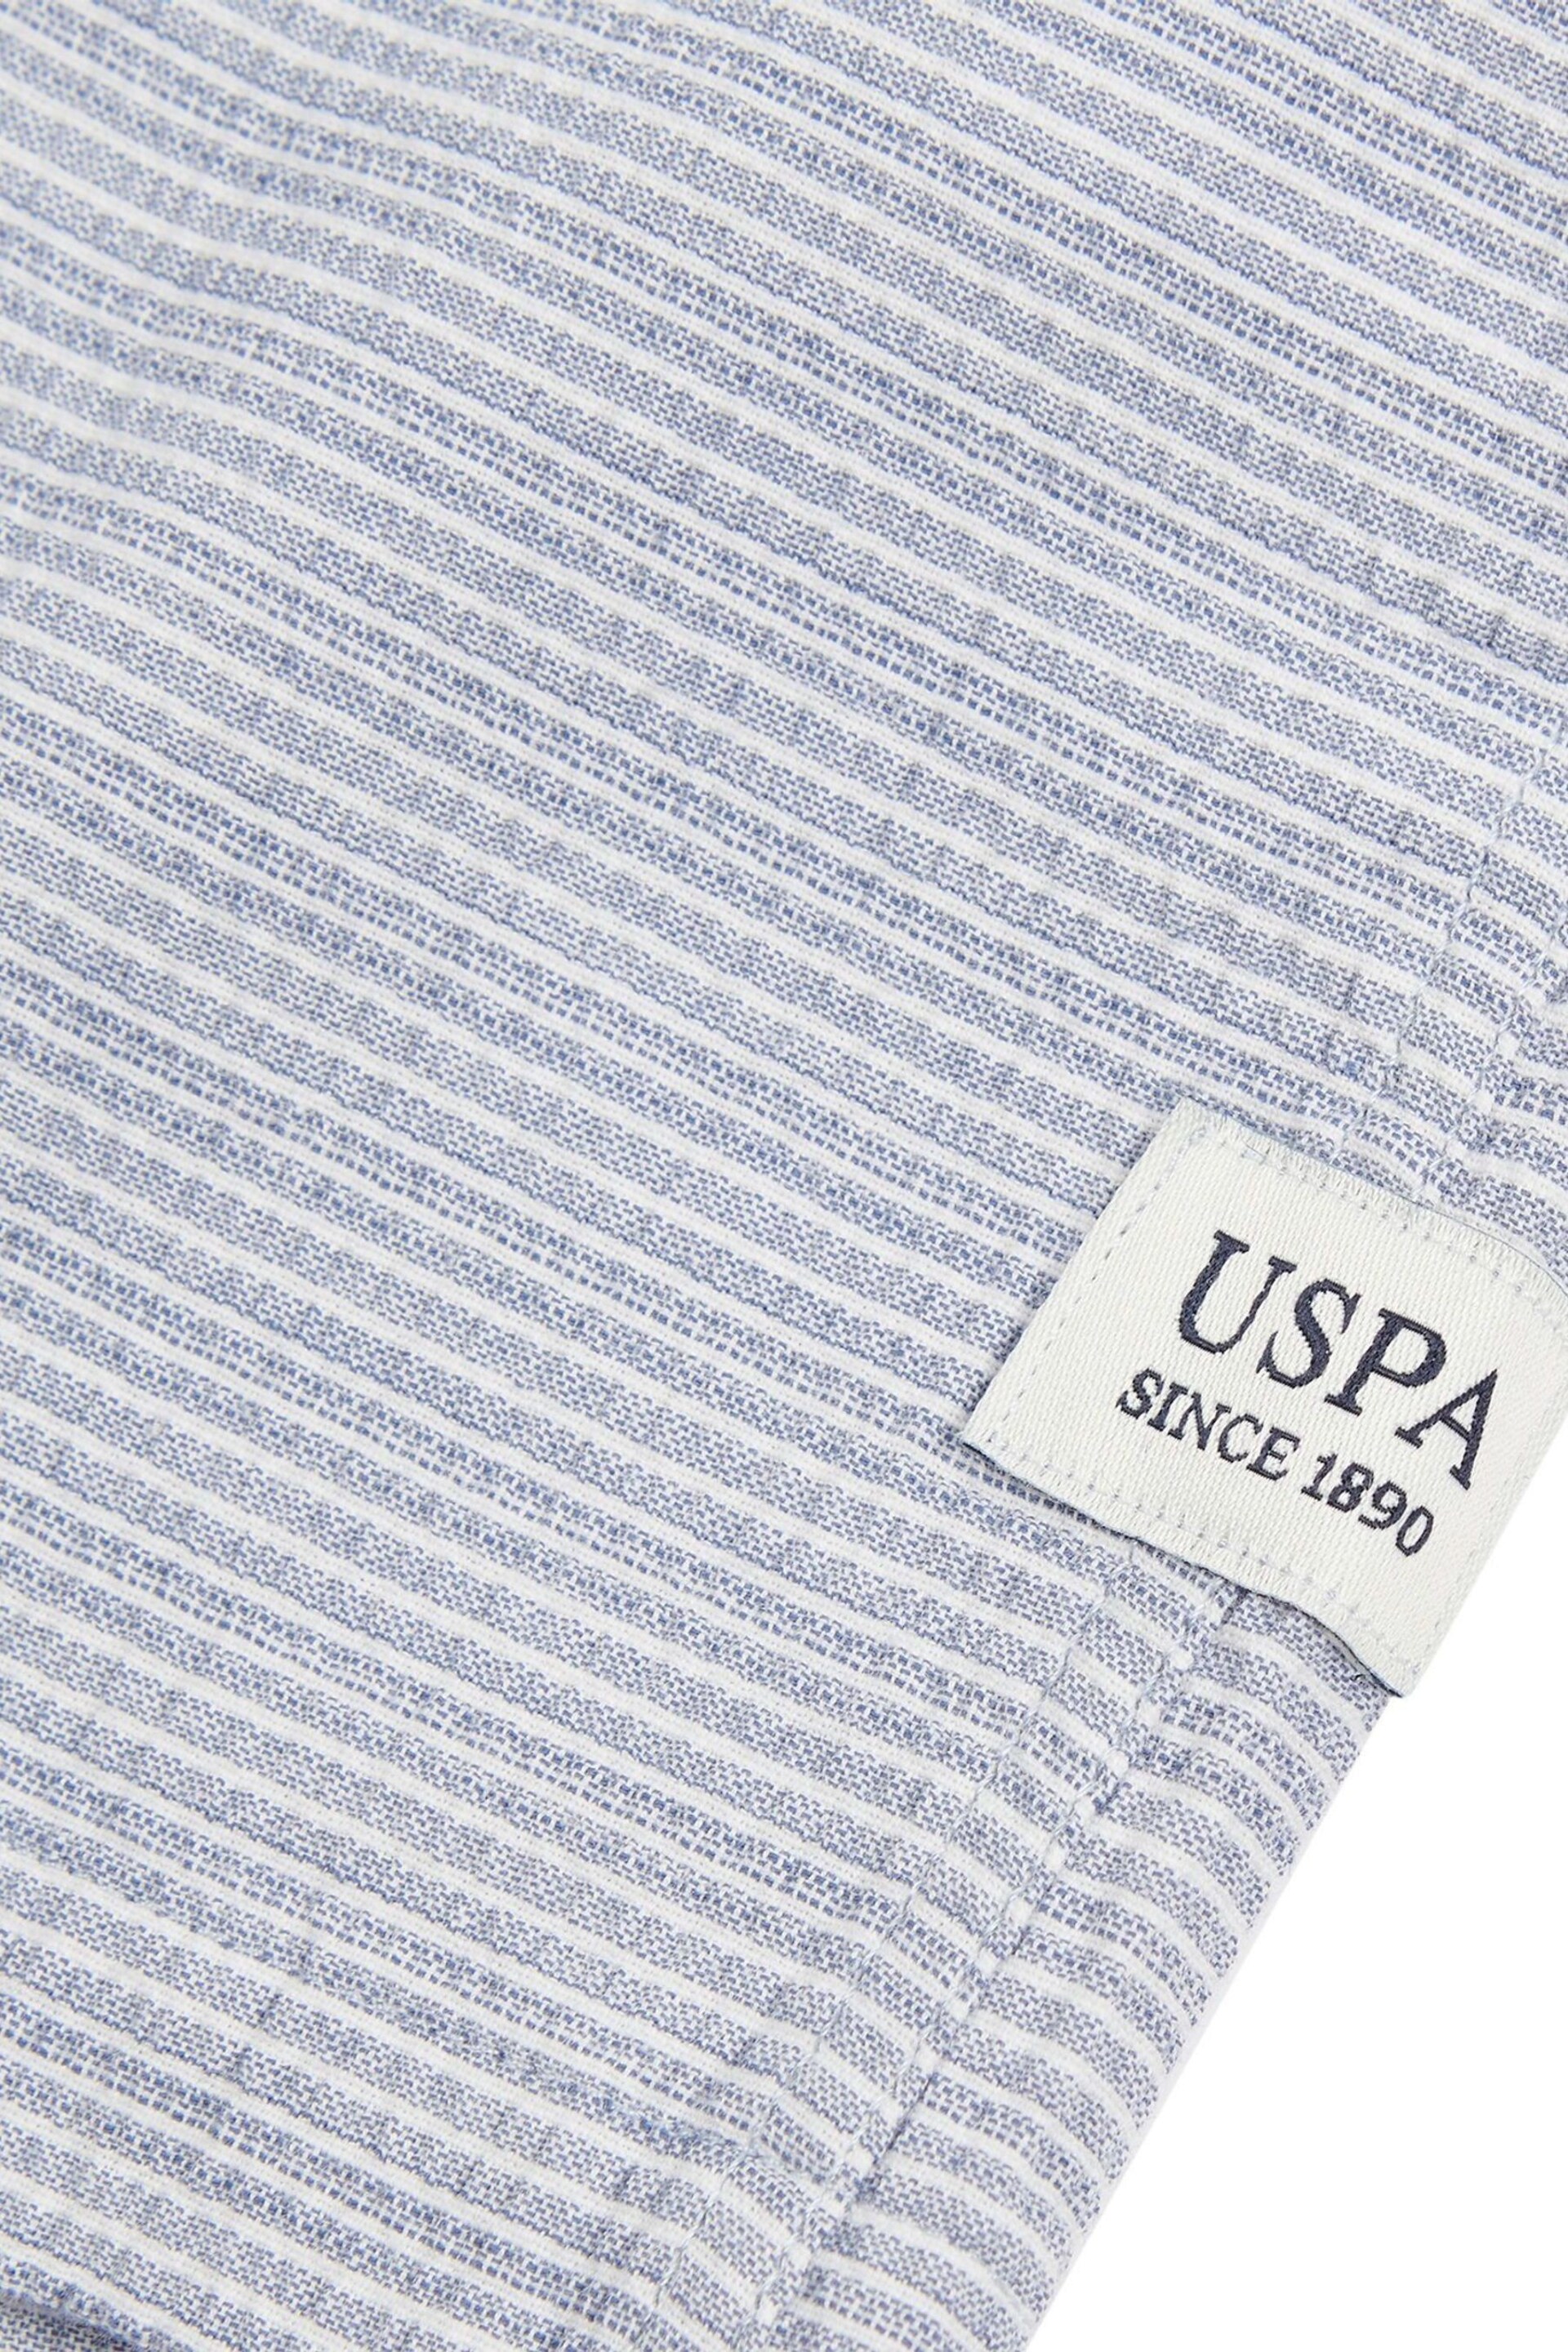 U.S. Polo Assn. Mens Blue Seersucker Stripe Short Sleeve Shirt - Image 8 of 9